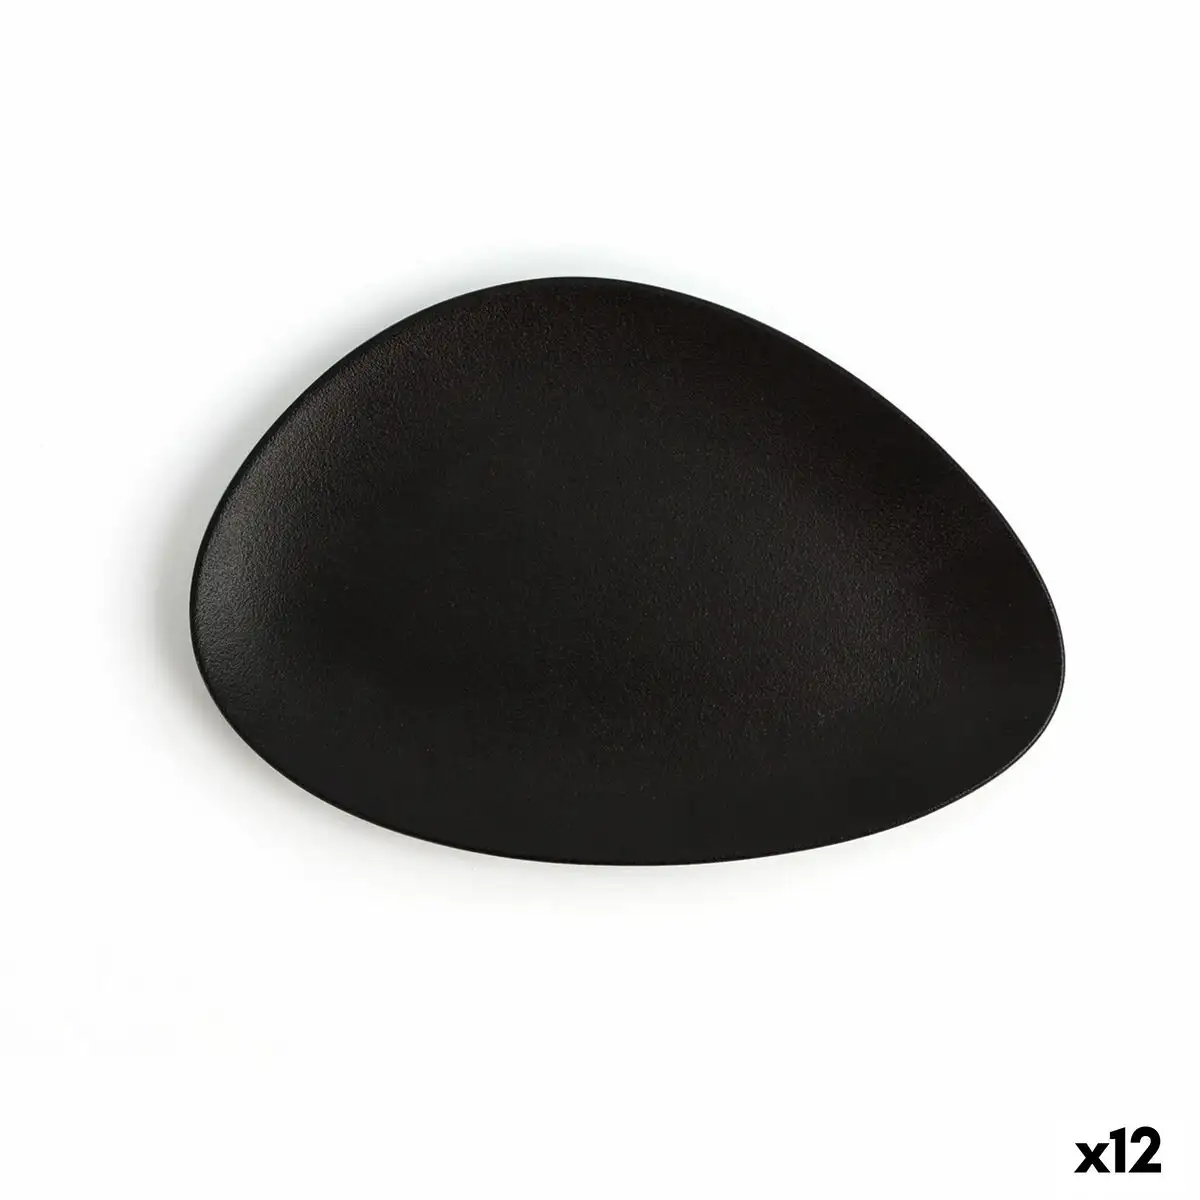 Assiette plate ariane antracita triangulaire ceramique noir o 21 cm 12 unites _9405. DIAYTAR SENEGAL - L'Art de Trouver ce que Vous Aimez. Plongez dans notre assortiment varié et choisissez parmi des produits qui reflètent votre style et répondent à vos besoins.